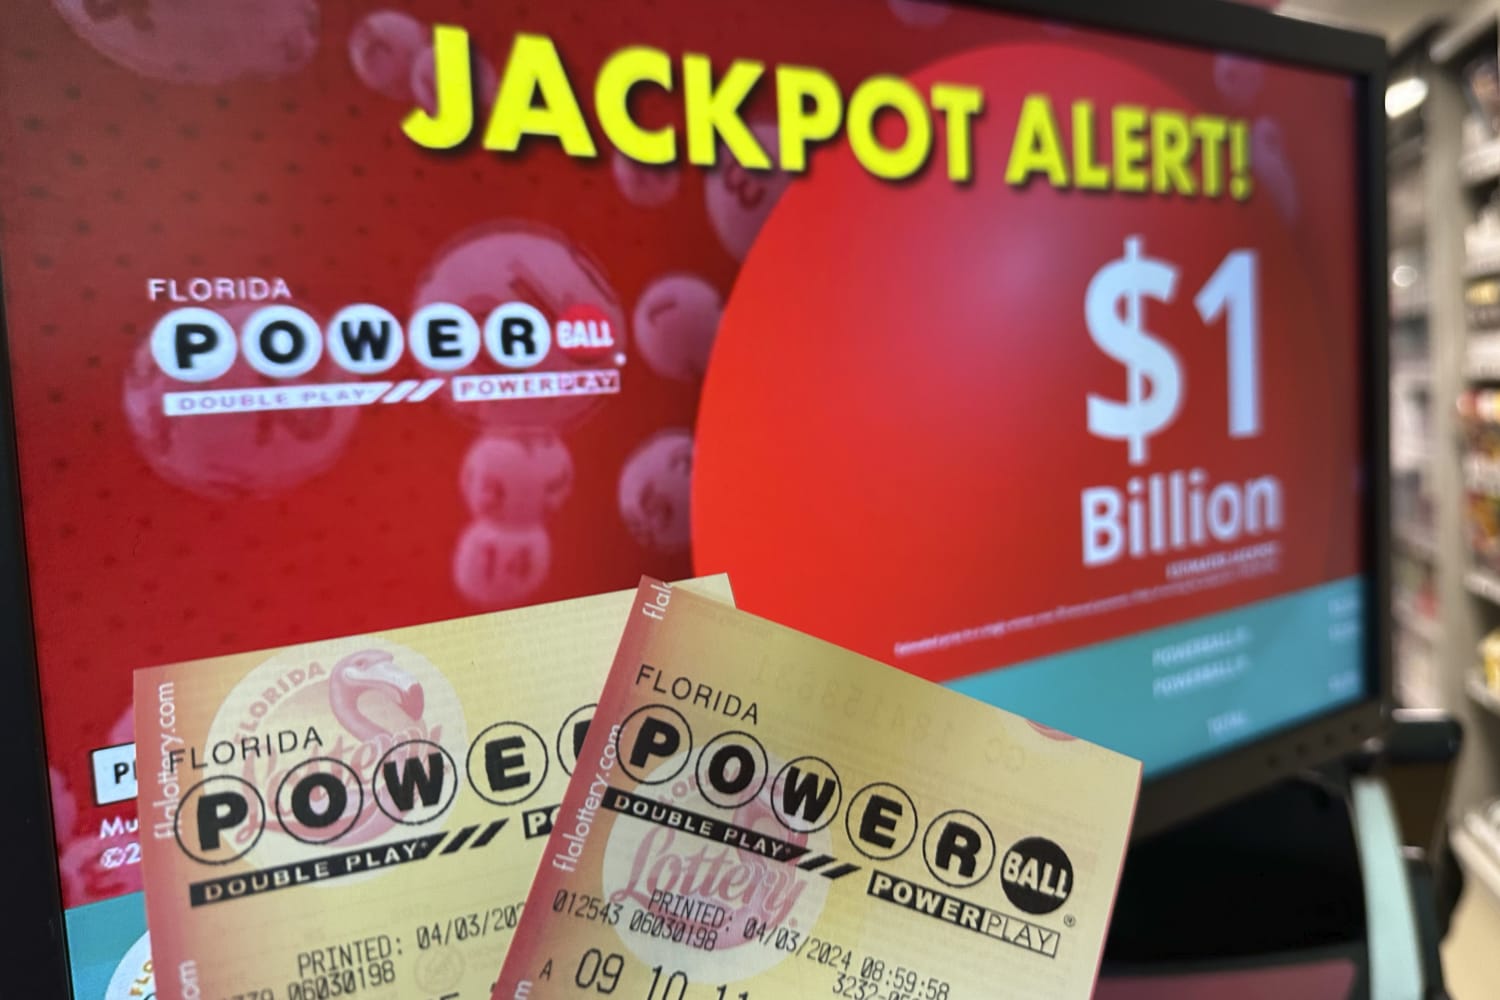 De Powerball-jackpottrekking van $ 1,3 miljard werd uitgesteld vanwege een probleem met de ticketverificatie